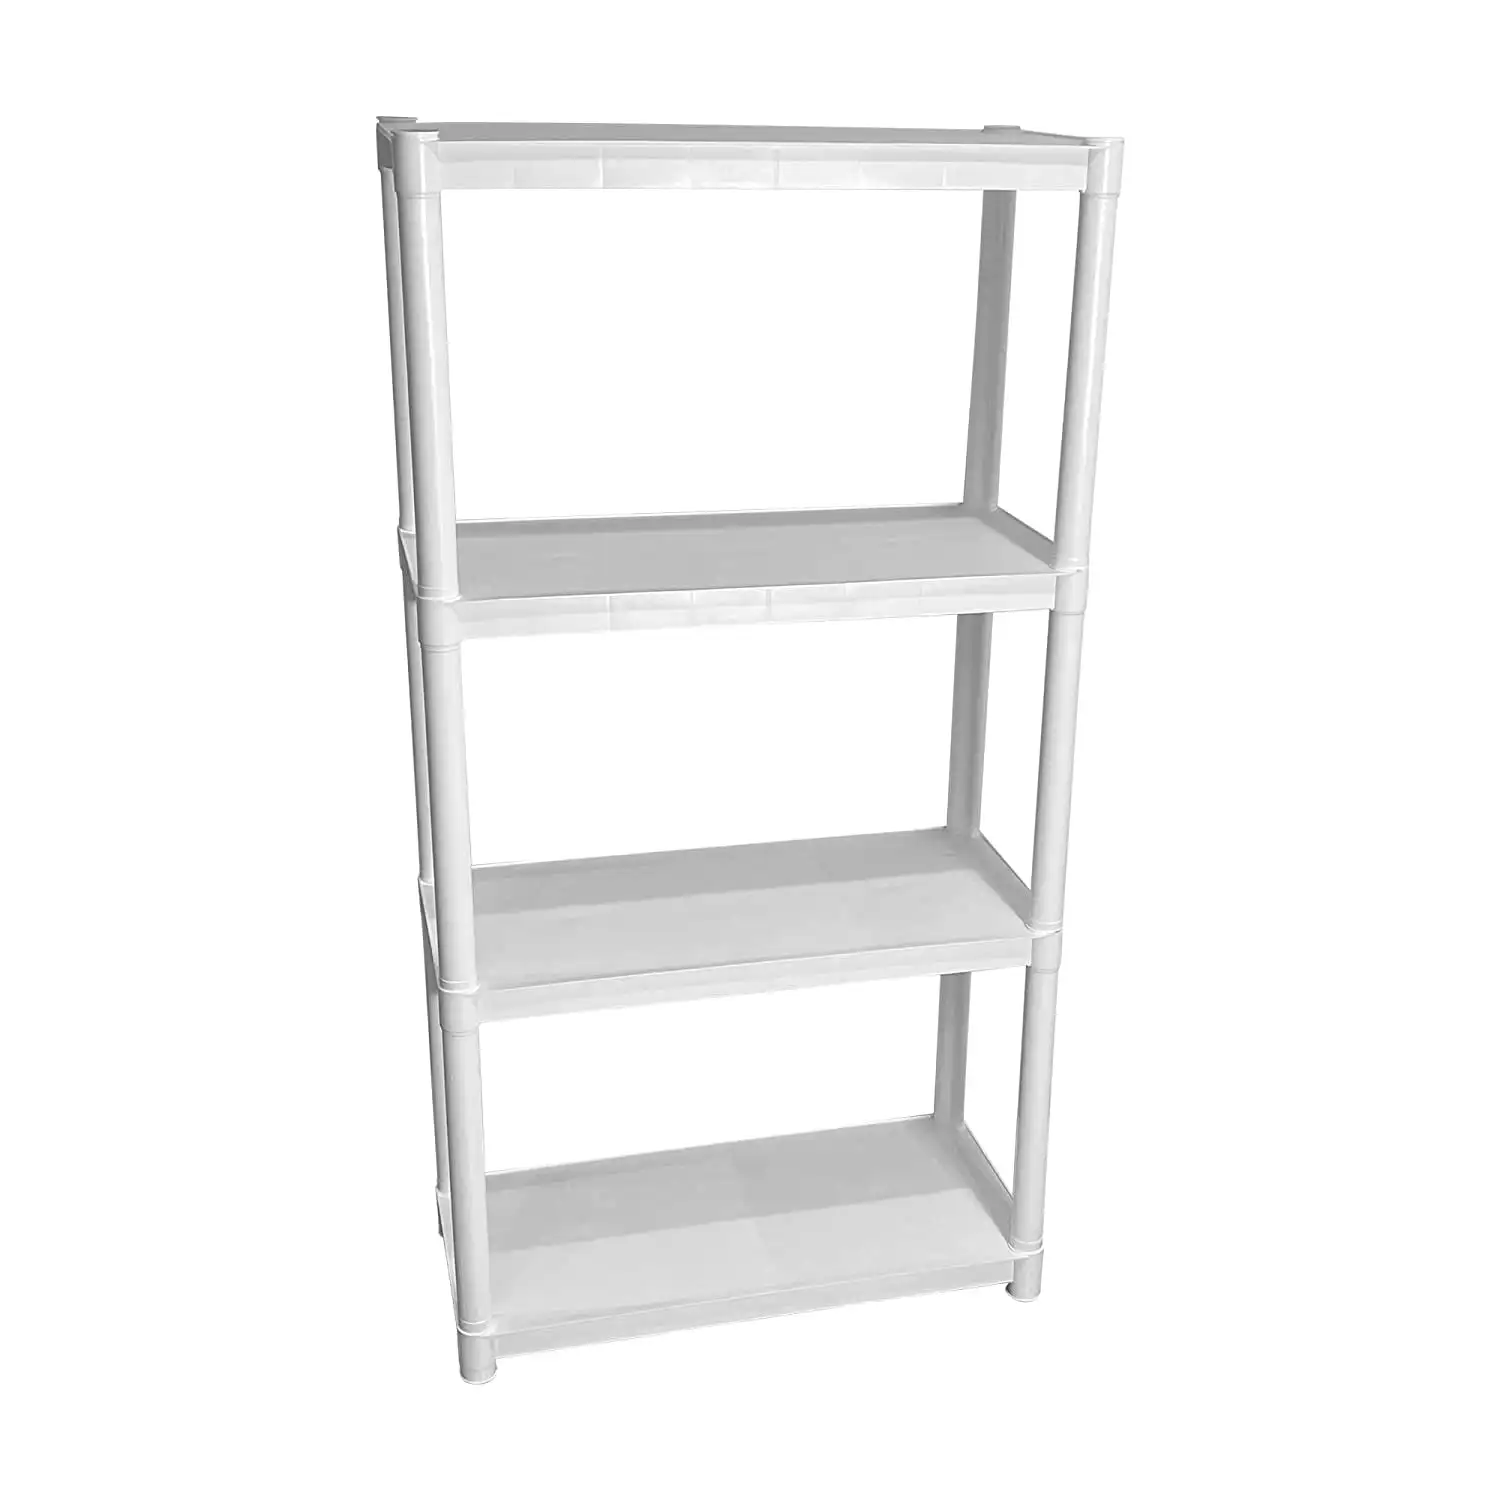 

Plastic Garage Shelves (30"W x 14"D x 57.5"H): Versatile 4-Shelf Storage Solution in White